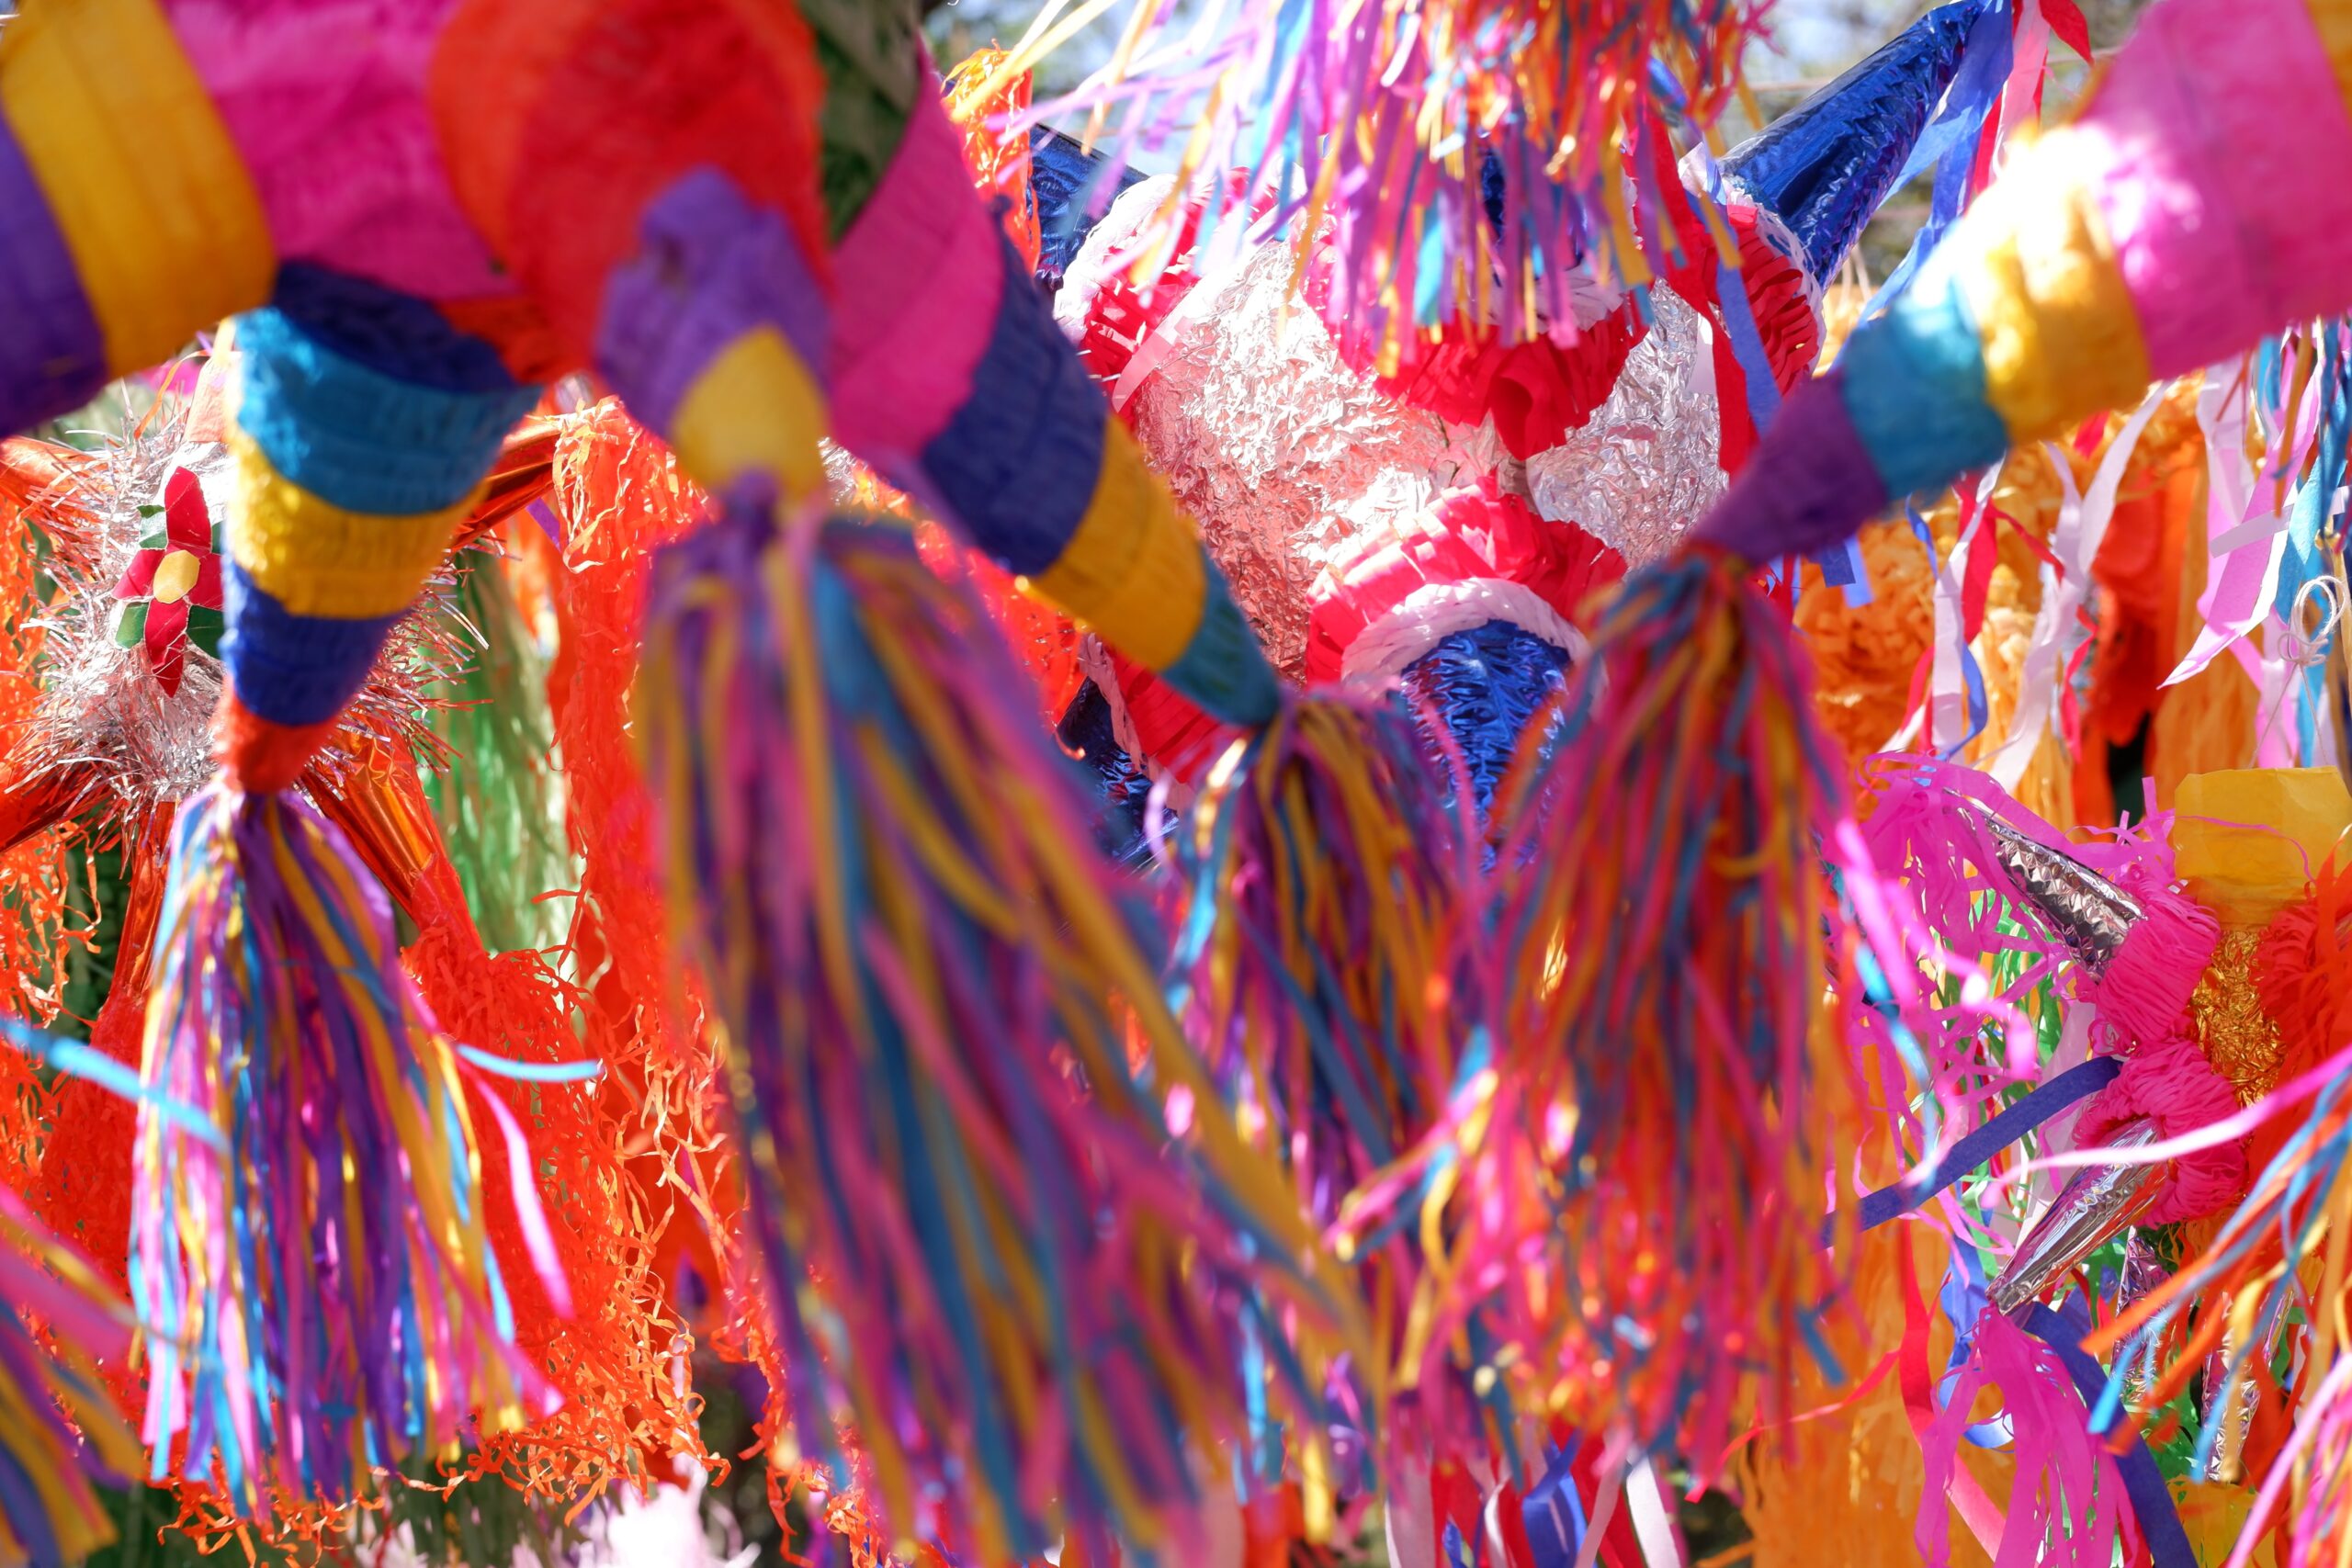 El origen de las piñatas. Foto de Santiago Filio para Unsplash